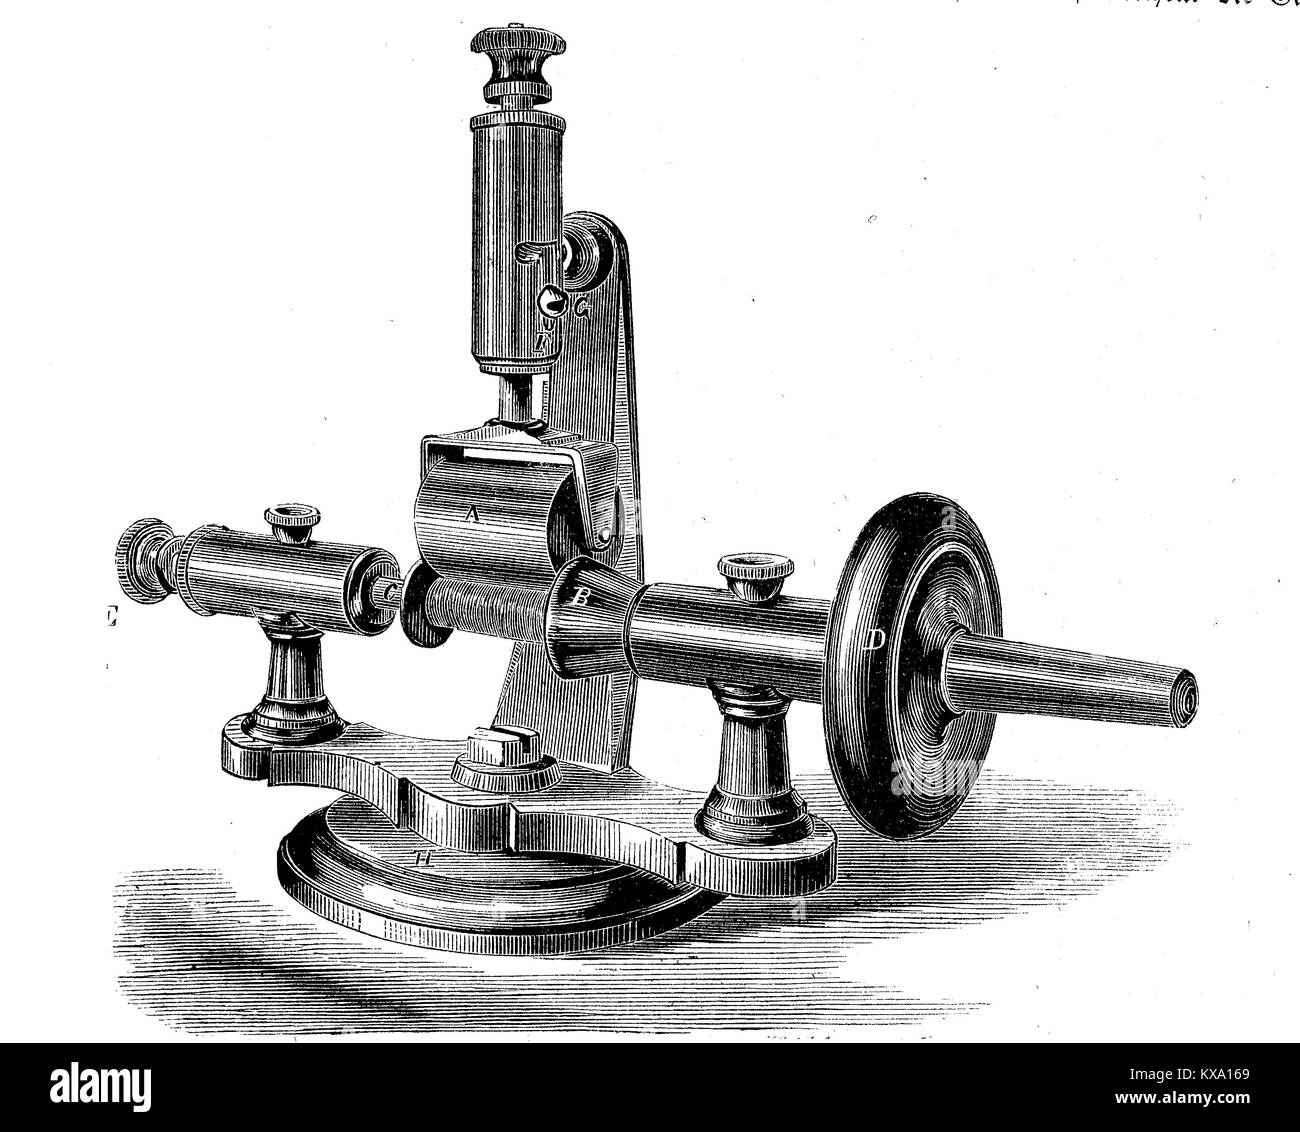 Invenzioni, macchina di avvolgimento per macchine da cucire, questa macchina avvolge il filo sulla bobina del tiratore macchine da cucire, digitale riproduzione migliorata da un originale xilografia o illustrazione a partire dall'anno 1880 Foto Stock